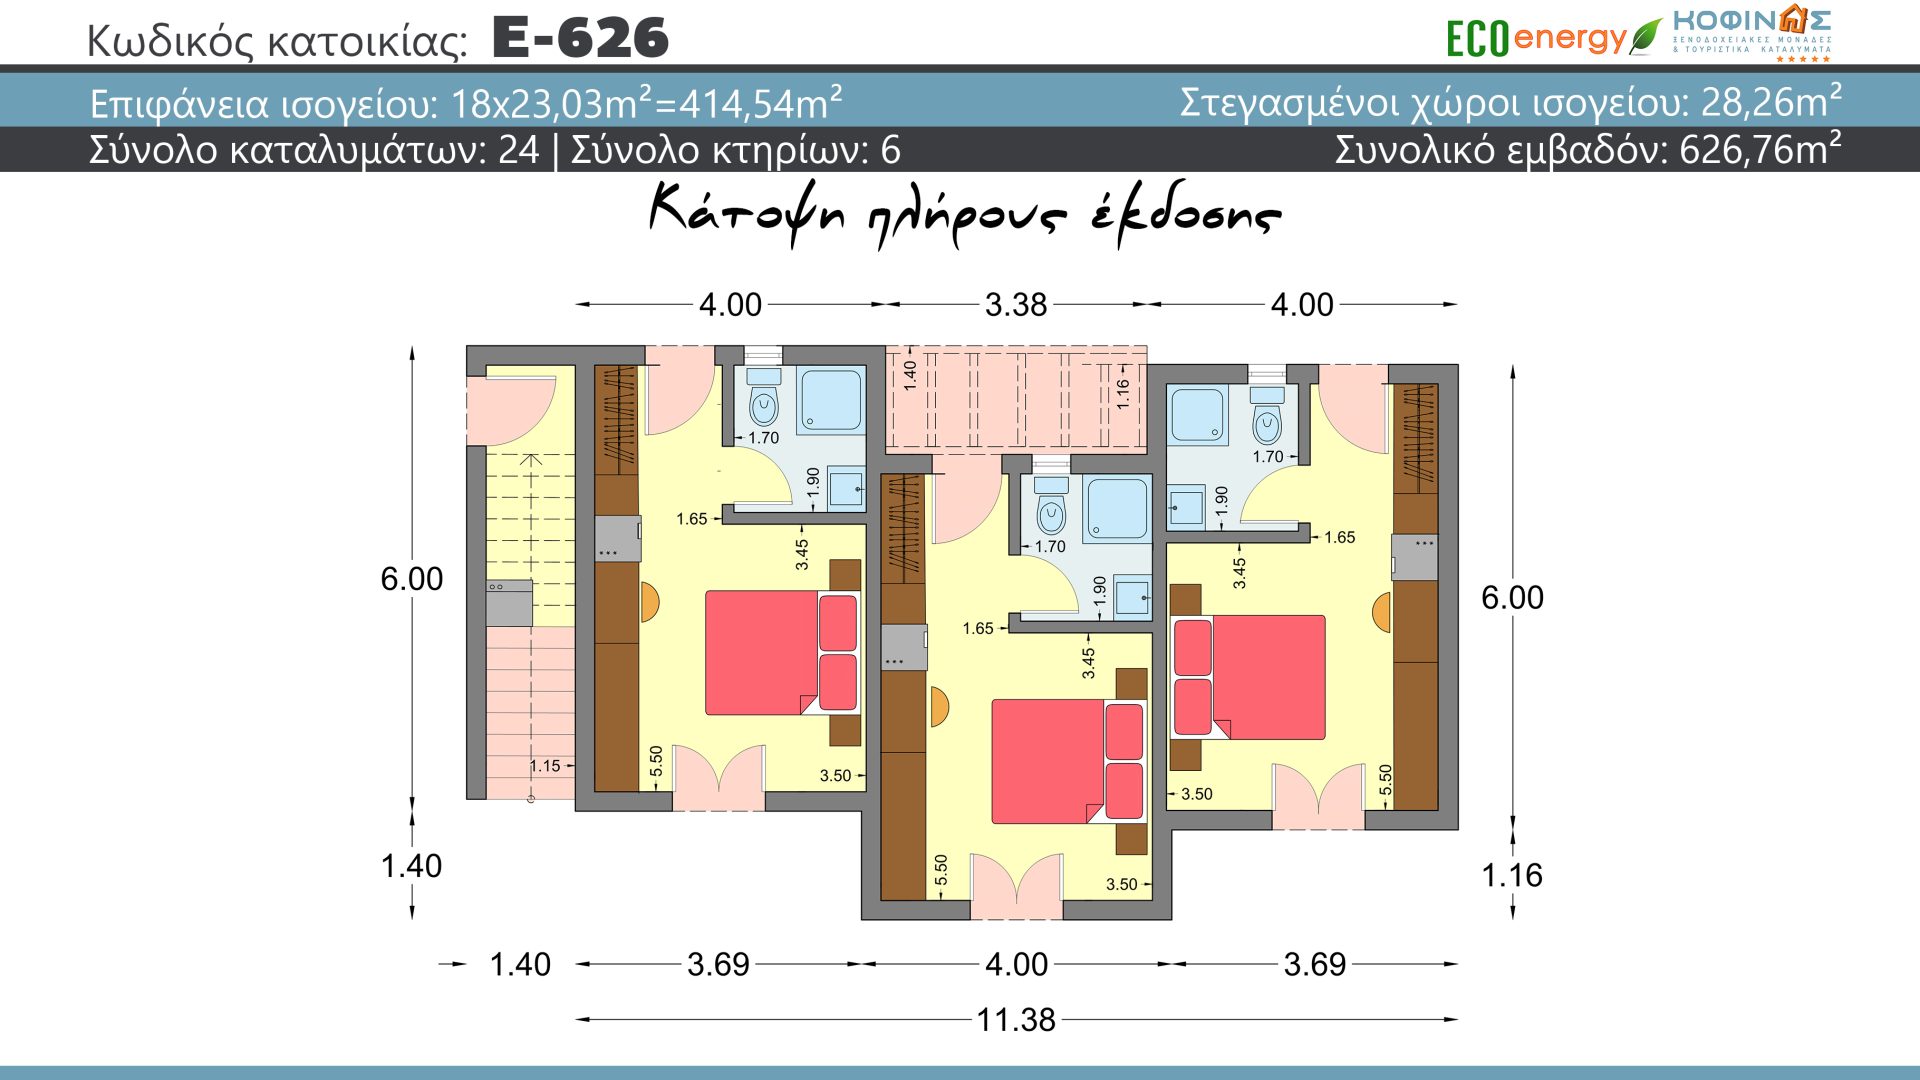 Συγκρότημα κατοικιών E-626, συνολικής επιφάνειας (18×23,03)+(6×35.37) = 626,75 τ.μ., συνολική επιφάνεια στεγασμένων χώρων 28,26 τ.μ., μπαλκόνια 214,14 τ.μ.